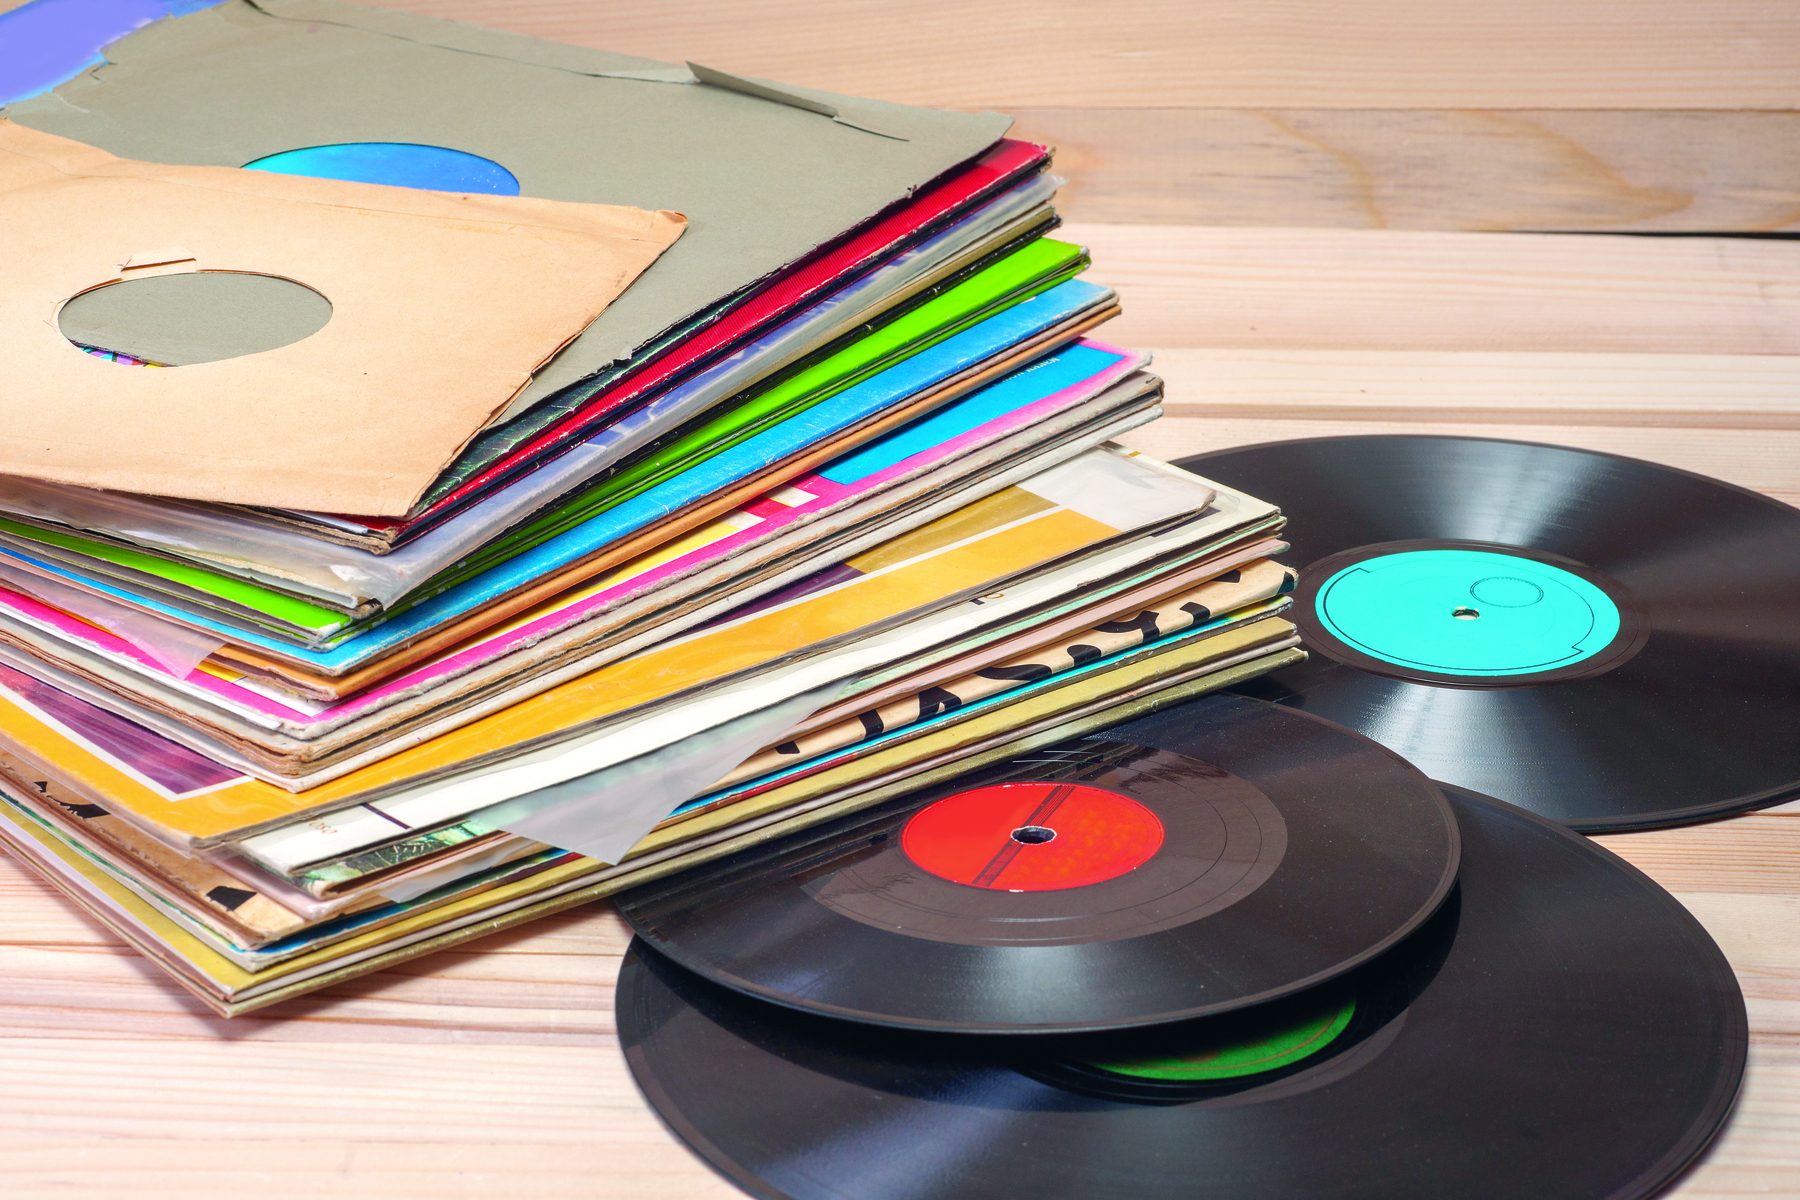 Fotografia. Capas de discos empilhadas uma sobre a outra e sobrepostas a três  discos pretos, com a parte central nas cores azul, vermelho e verde.